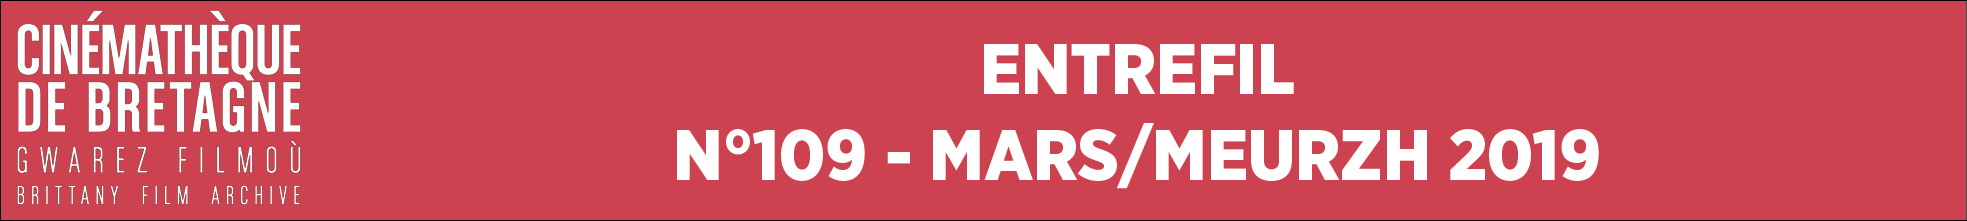 Newsletter N°109 - Mars/Meurzh 2019